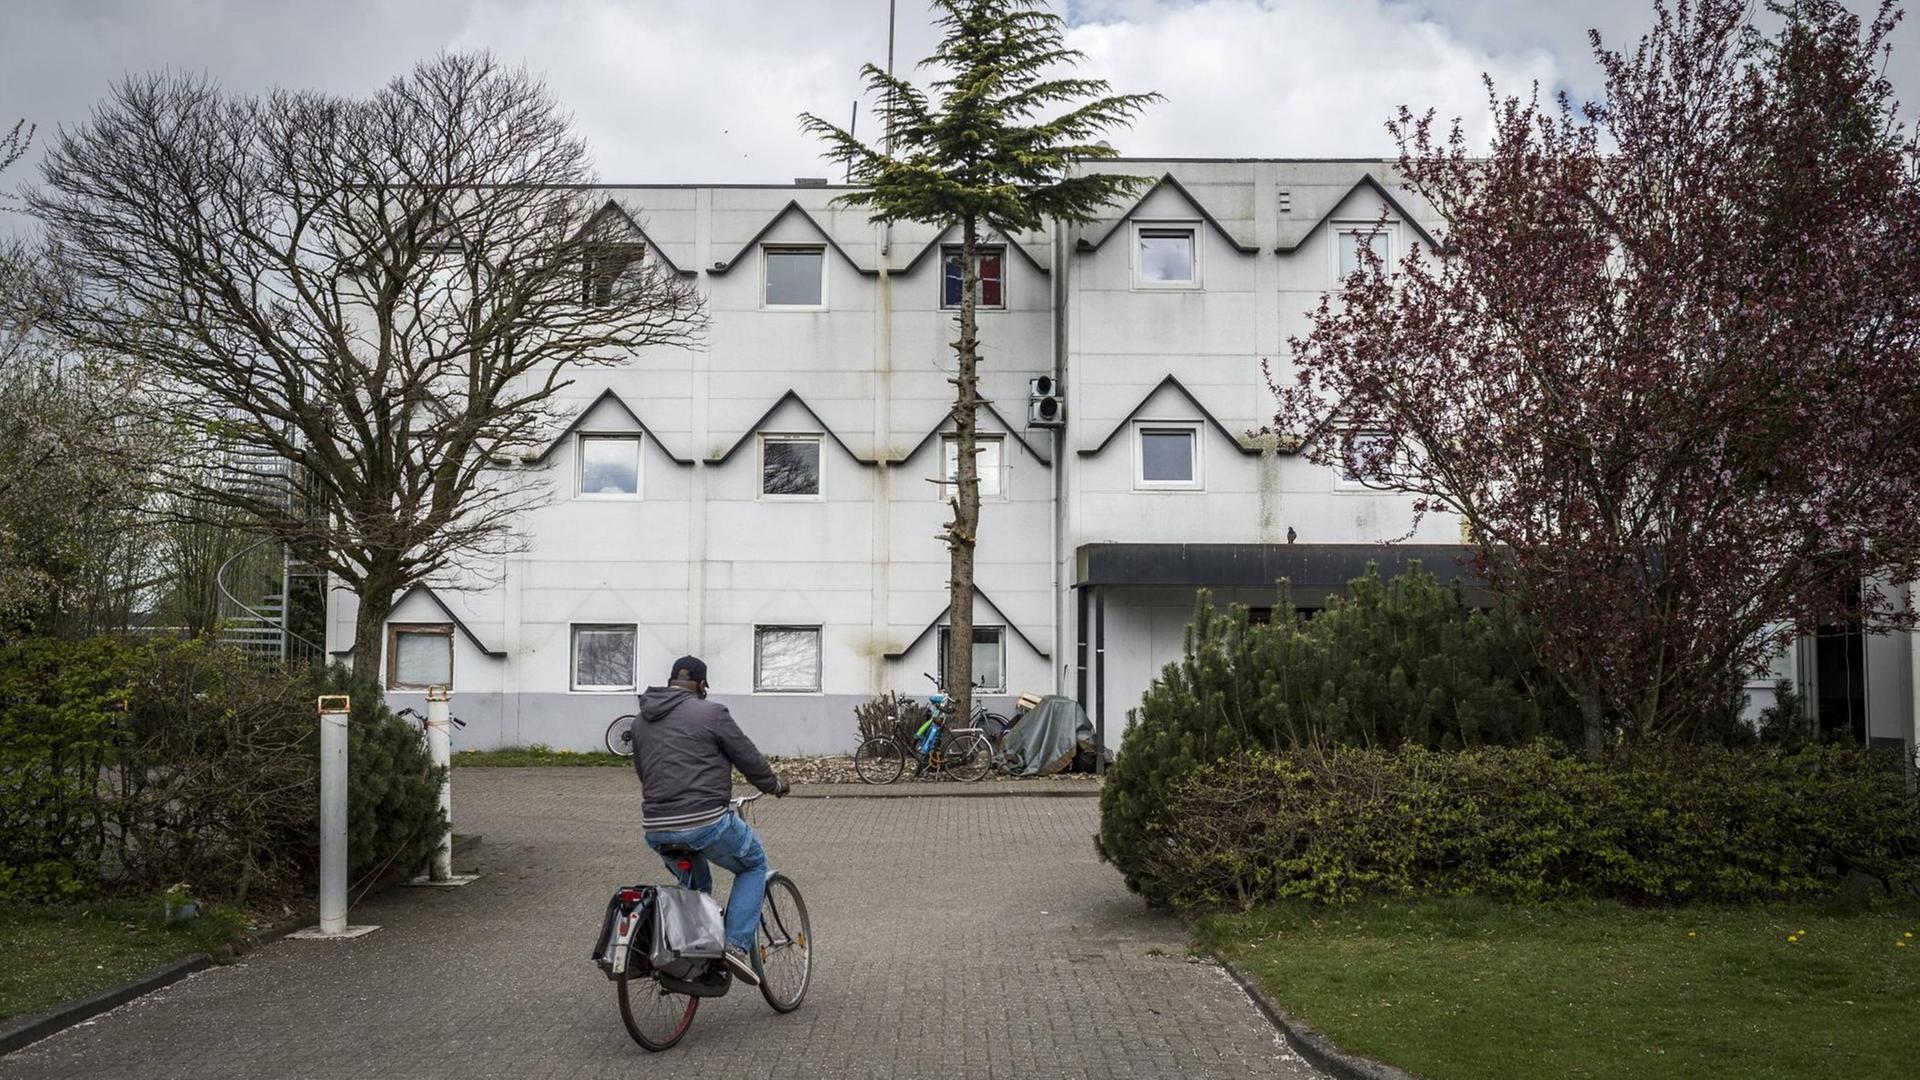 Bett-Bad-Brot Einrichtung in der Stadt Groningen. Das ehemaligen Formel-1-Hotel ist ein Unterkunft für Asylsuchende. 05.04.2017 Niederlande, Groningen.